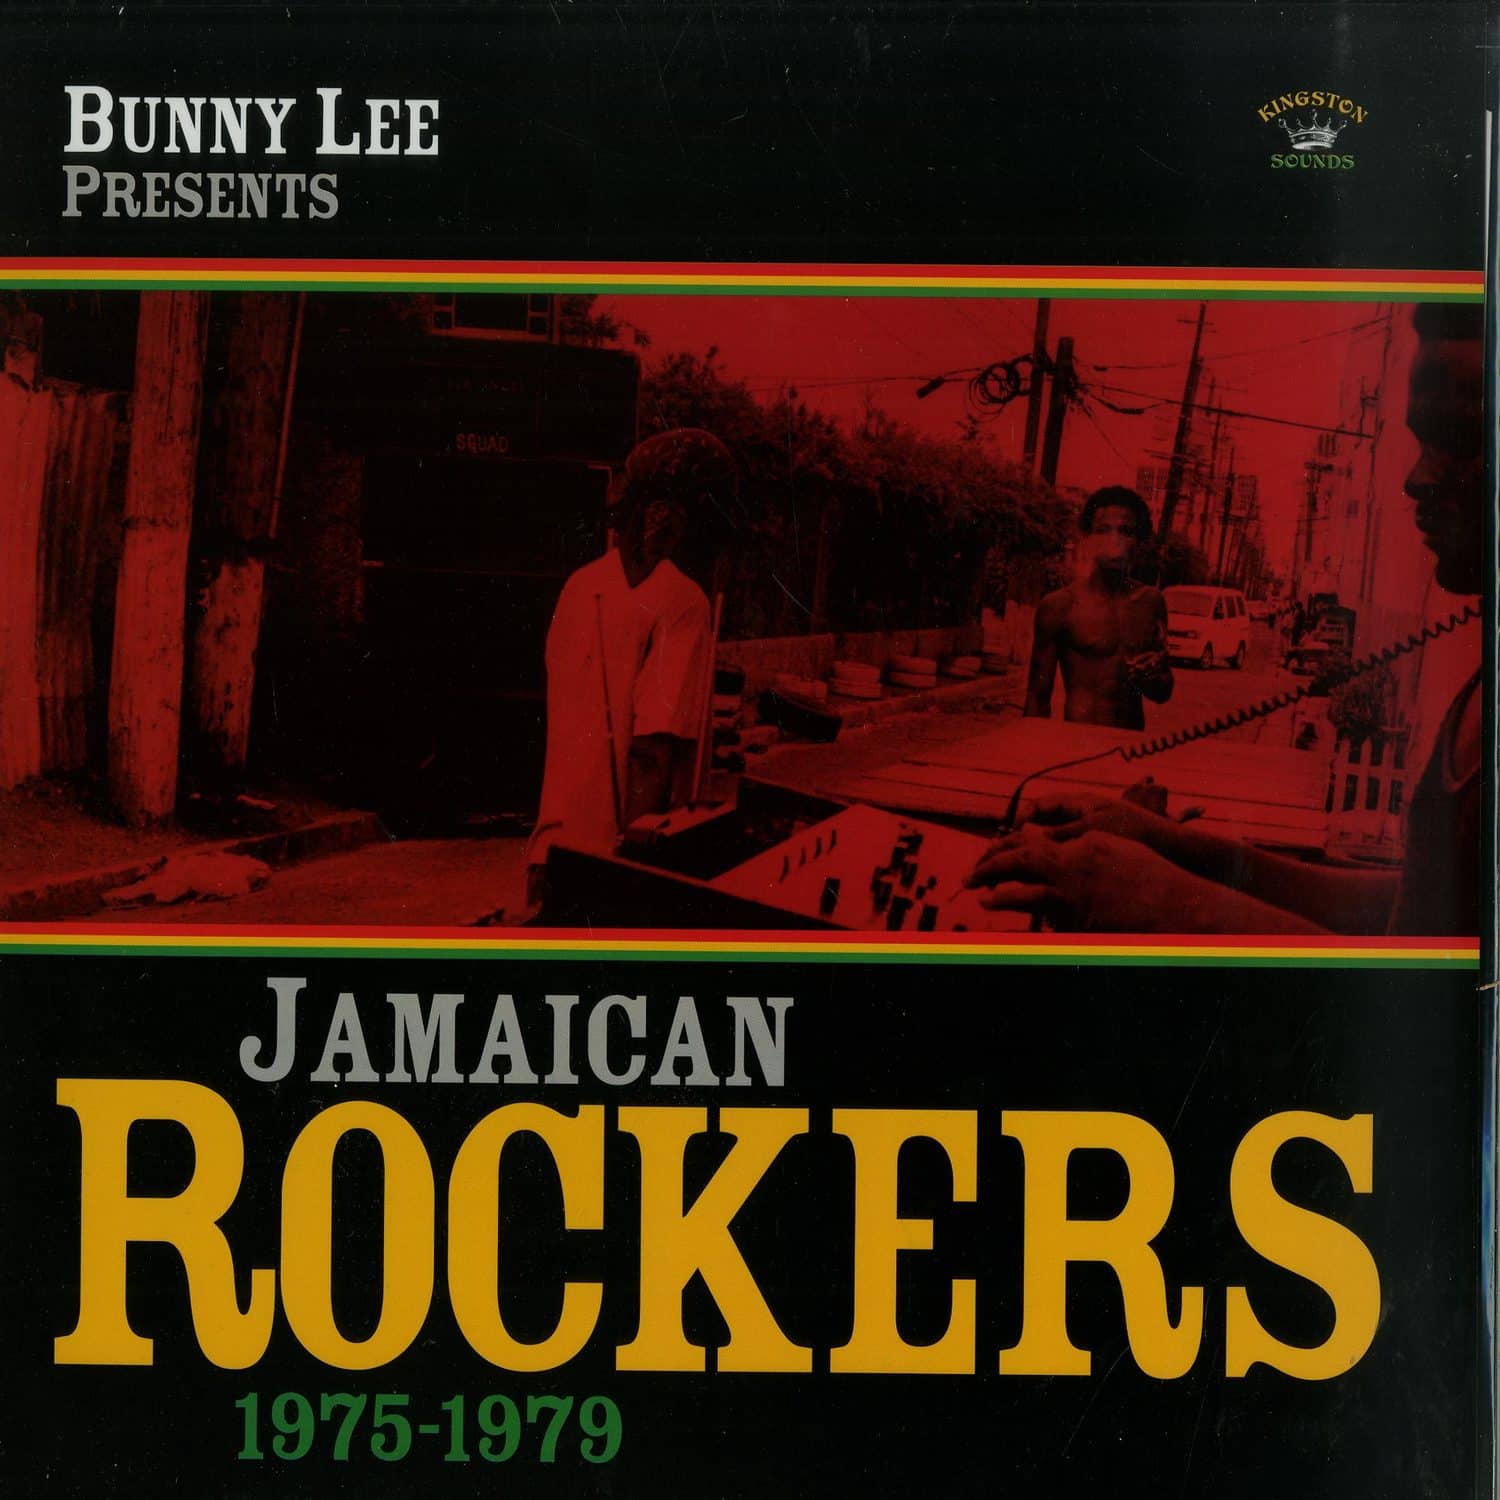 Bunny Lee Presents - JAMAICAN ROCKERS 1975 -1979 